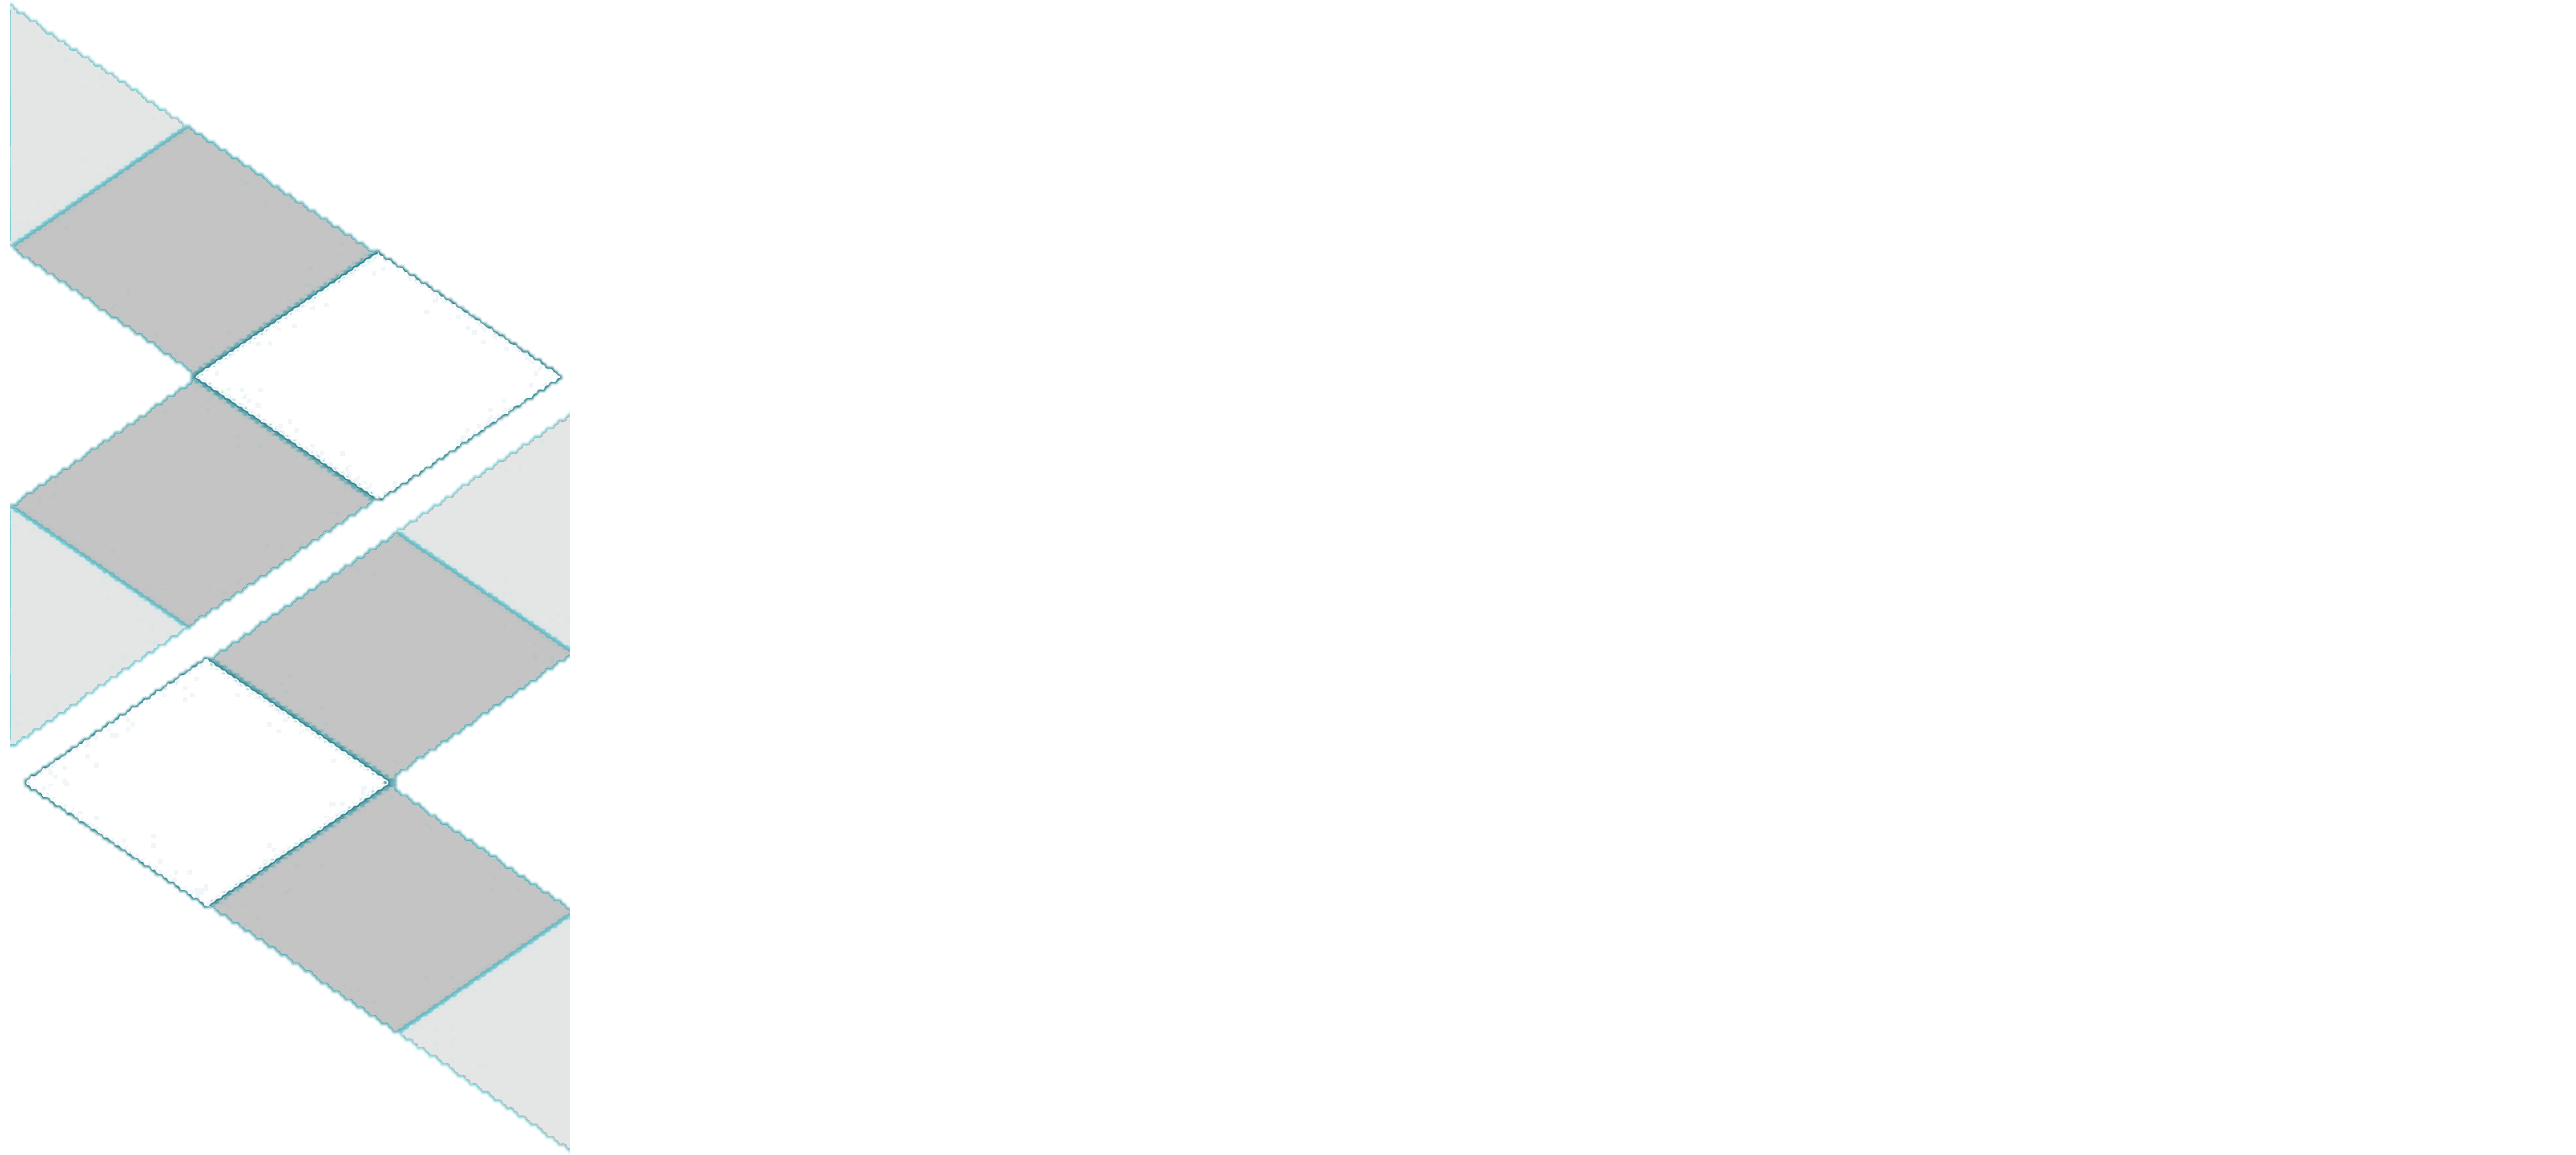 Zircon Host